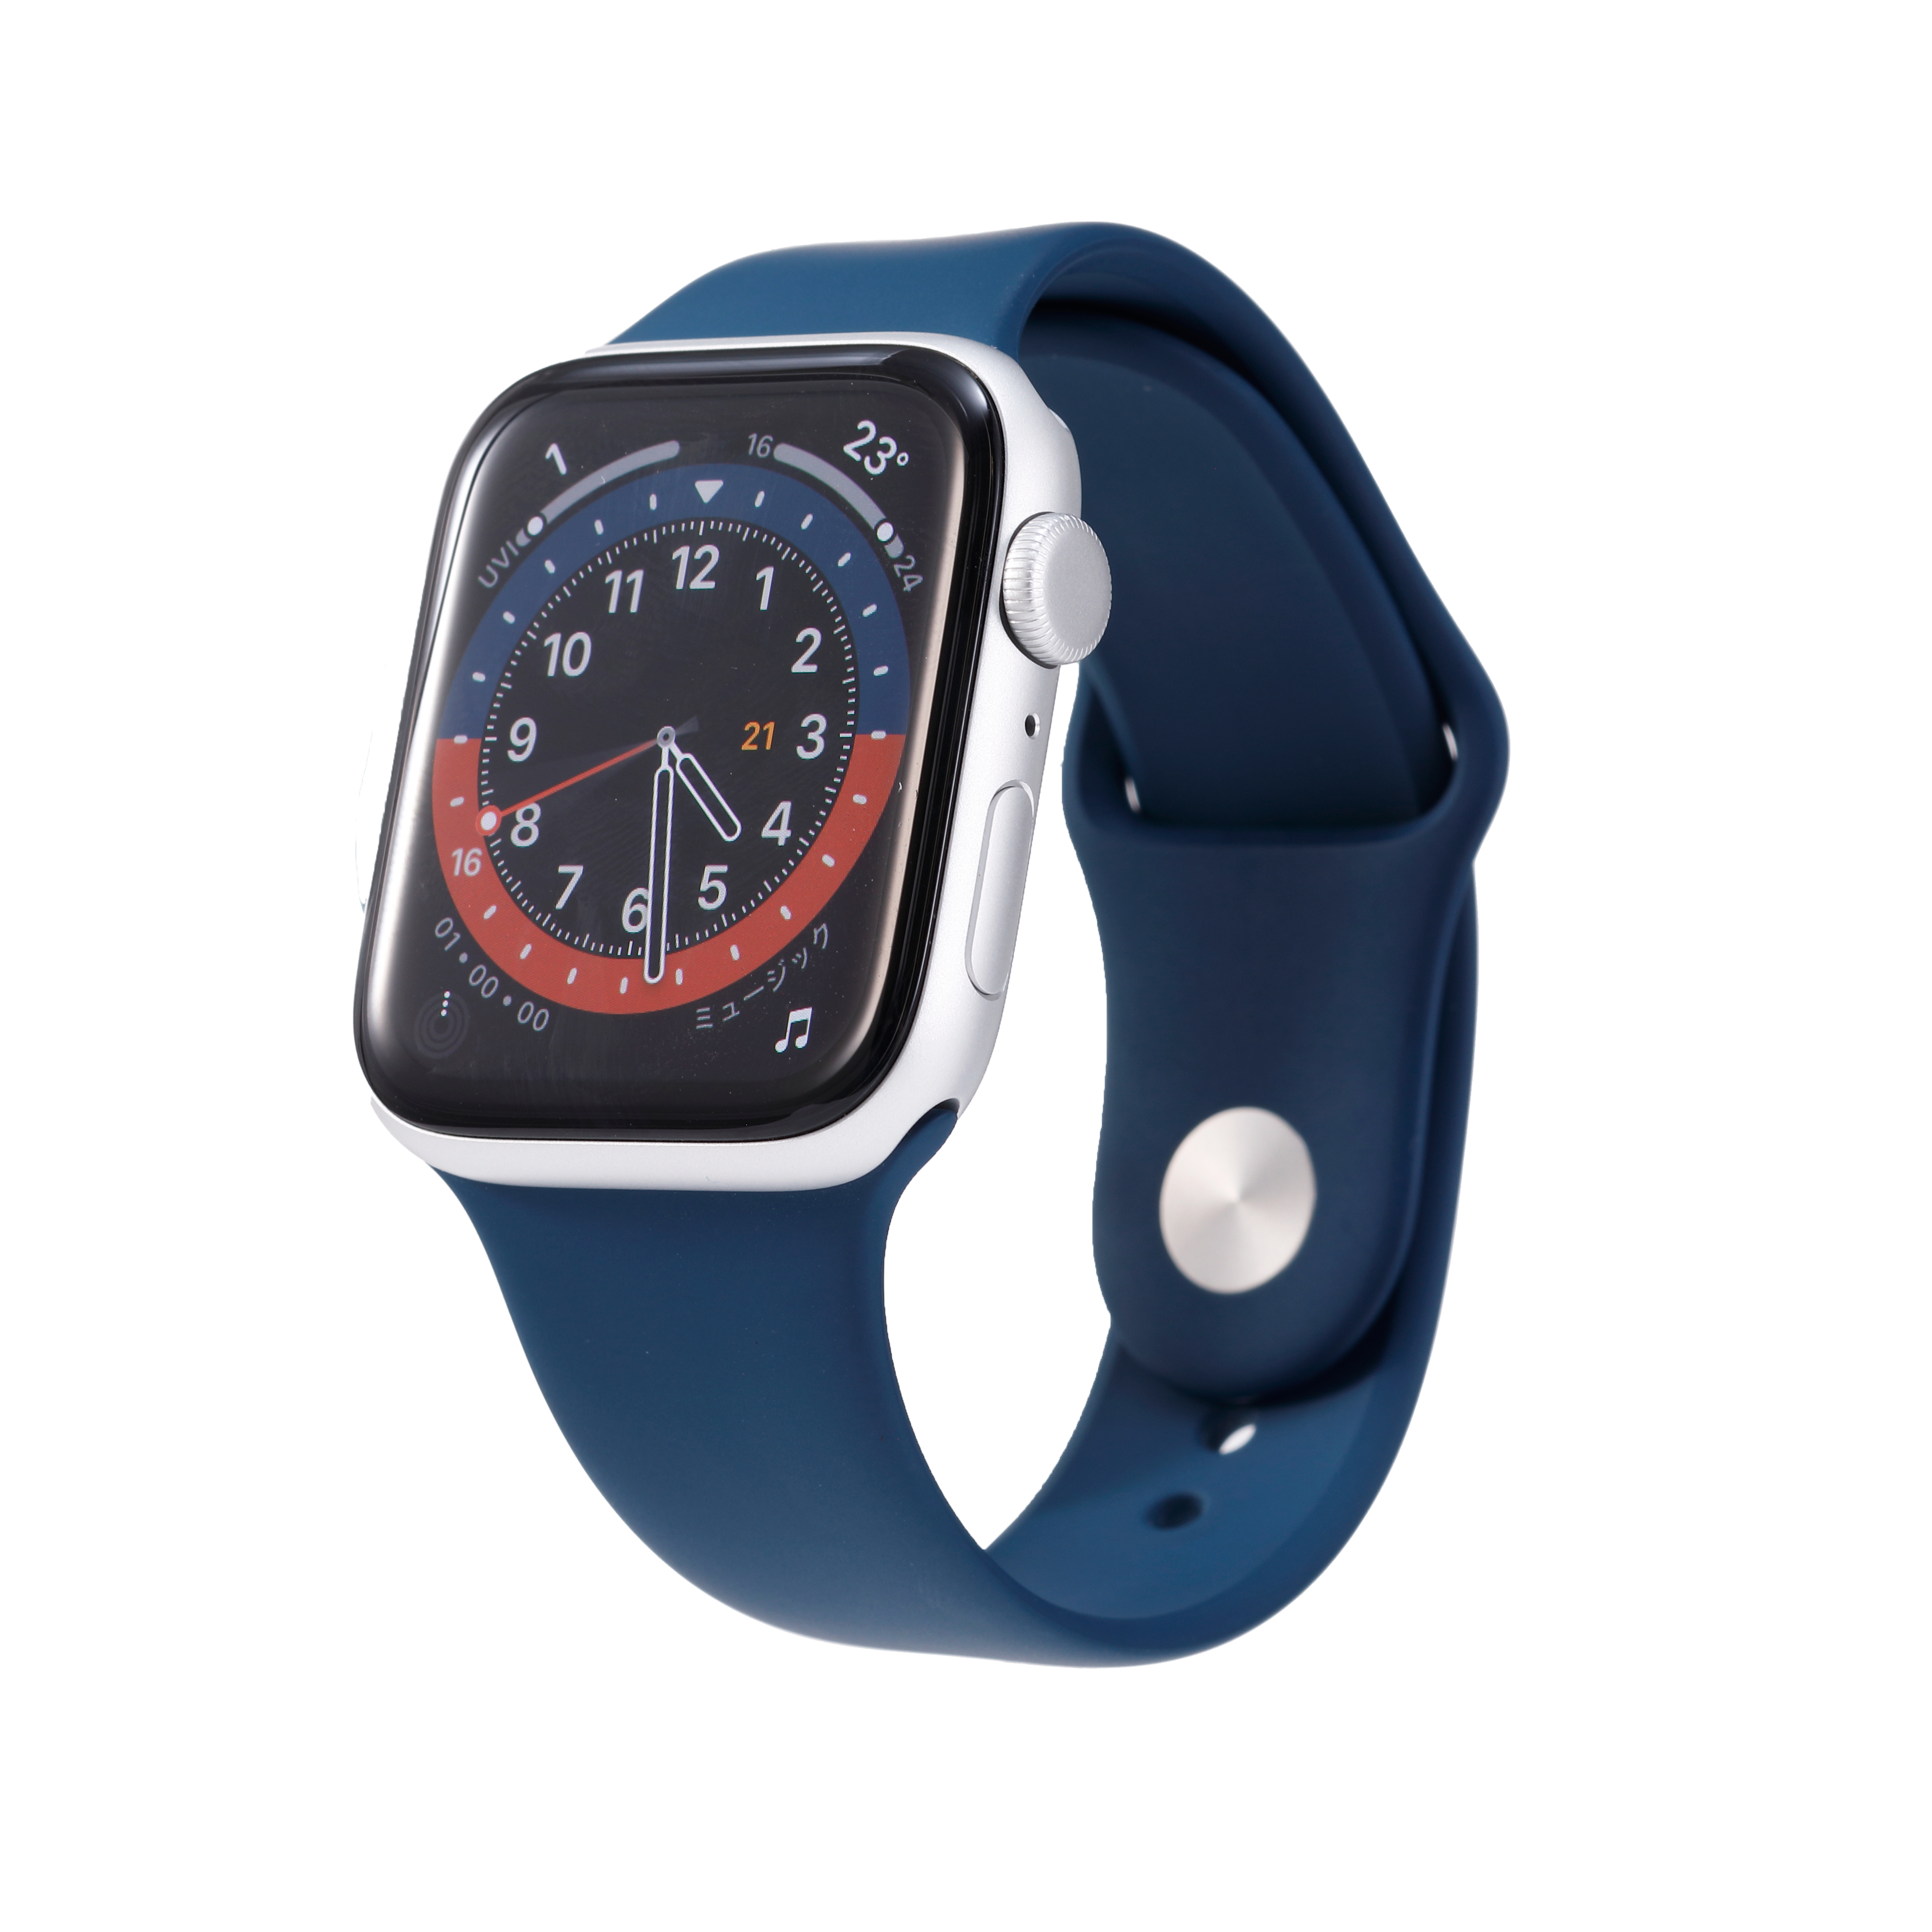 Apple Watch縺ｮ縺翫☆縺吶ａ莠ｺ豌励Λ繝ｳ繧ｭ繝ｳ繧ｰ9驕ｸ縲�2023蟷ｴ11譛亥ｾｹ蠎墓ｯ碑ｼ�縲� mybest